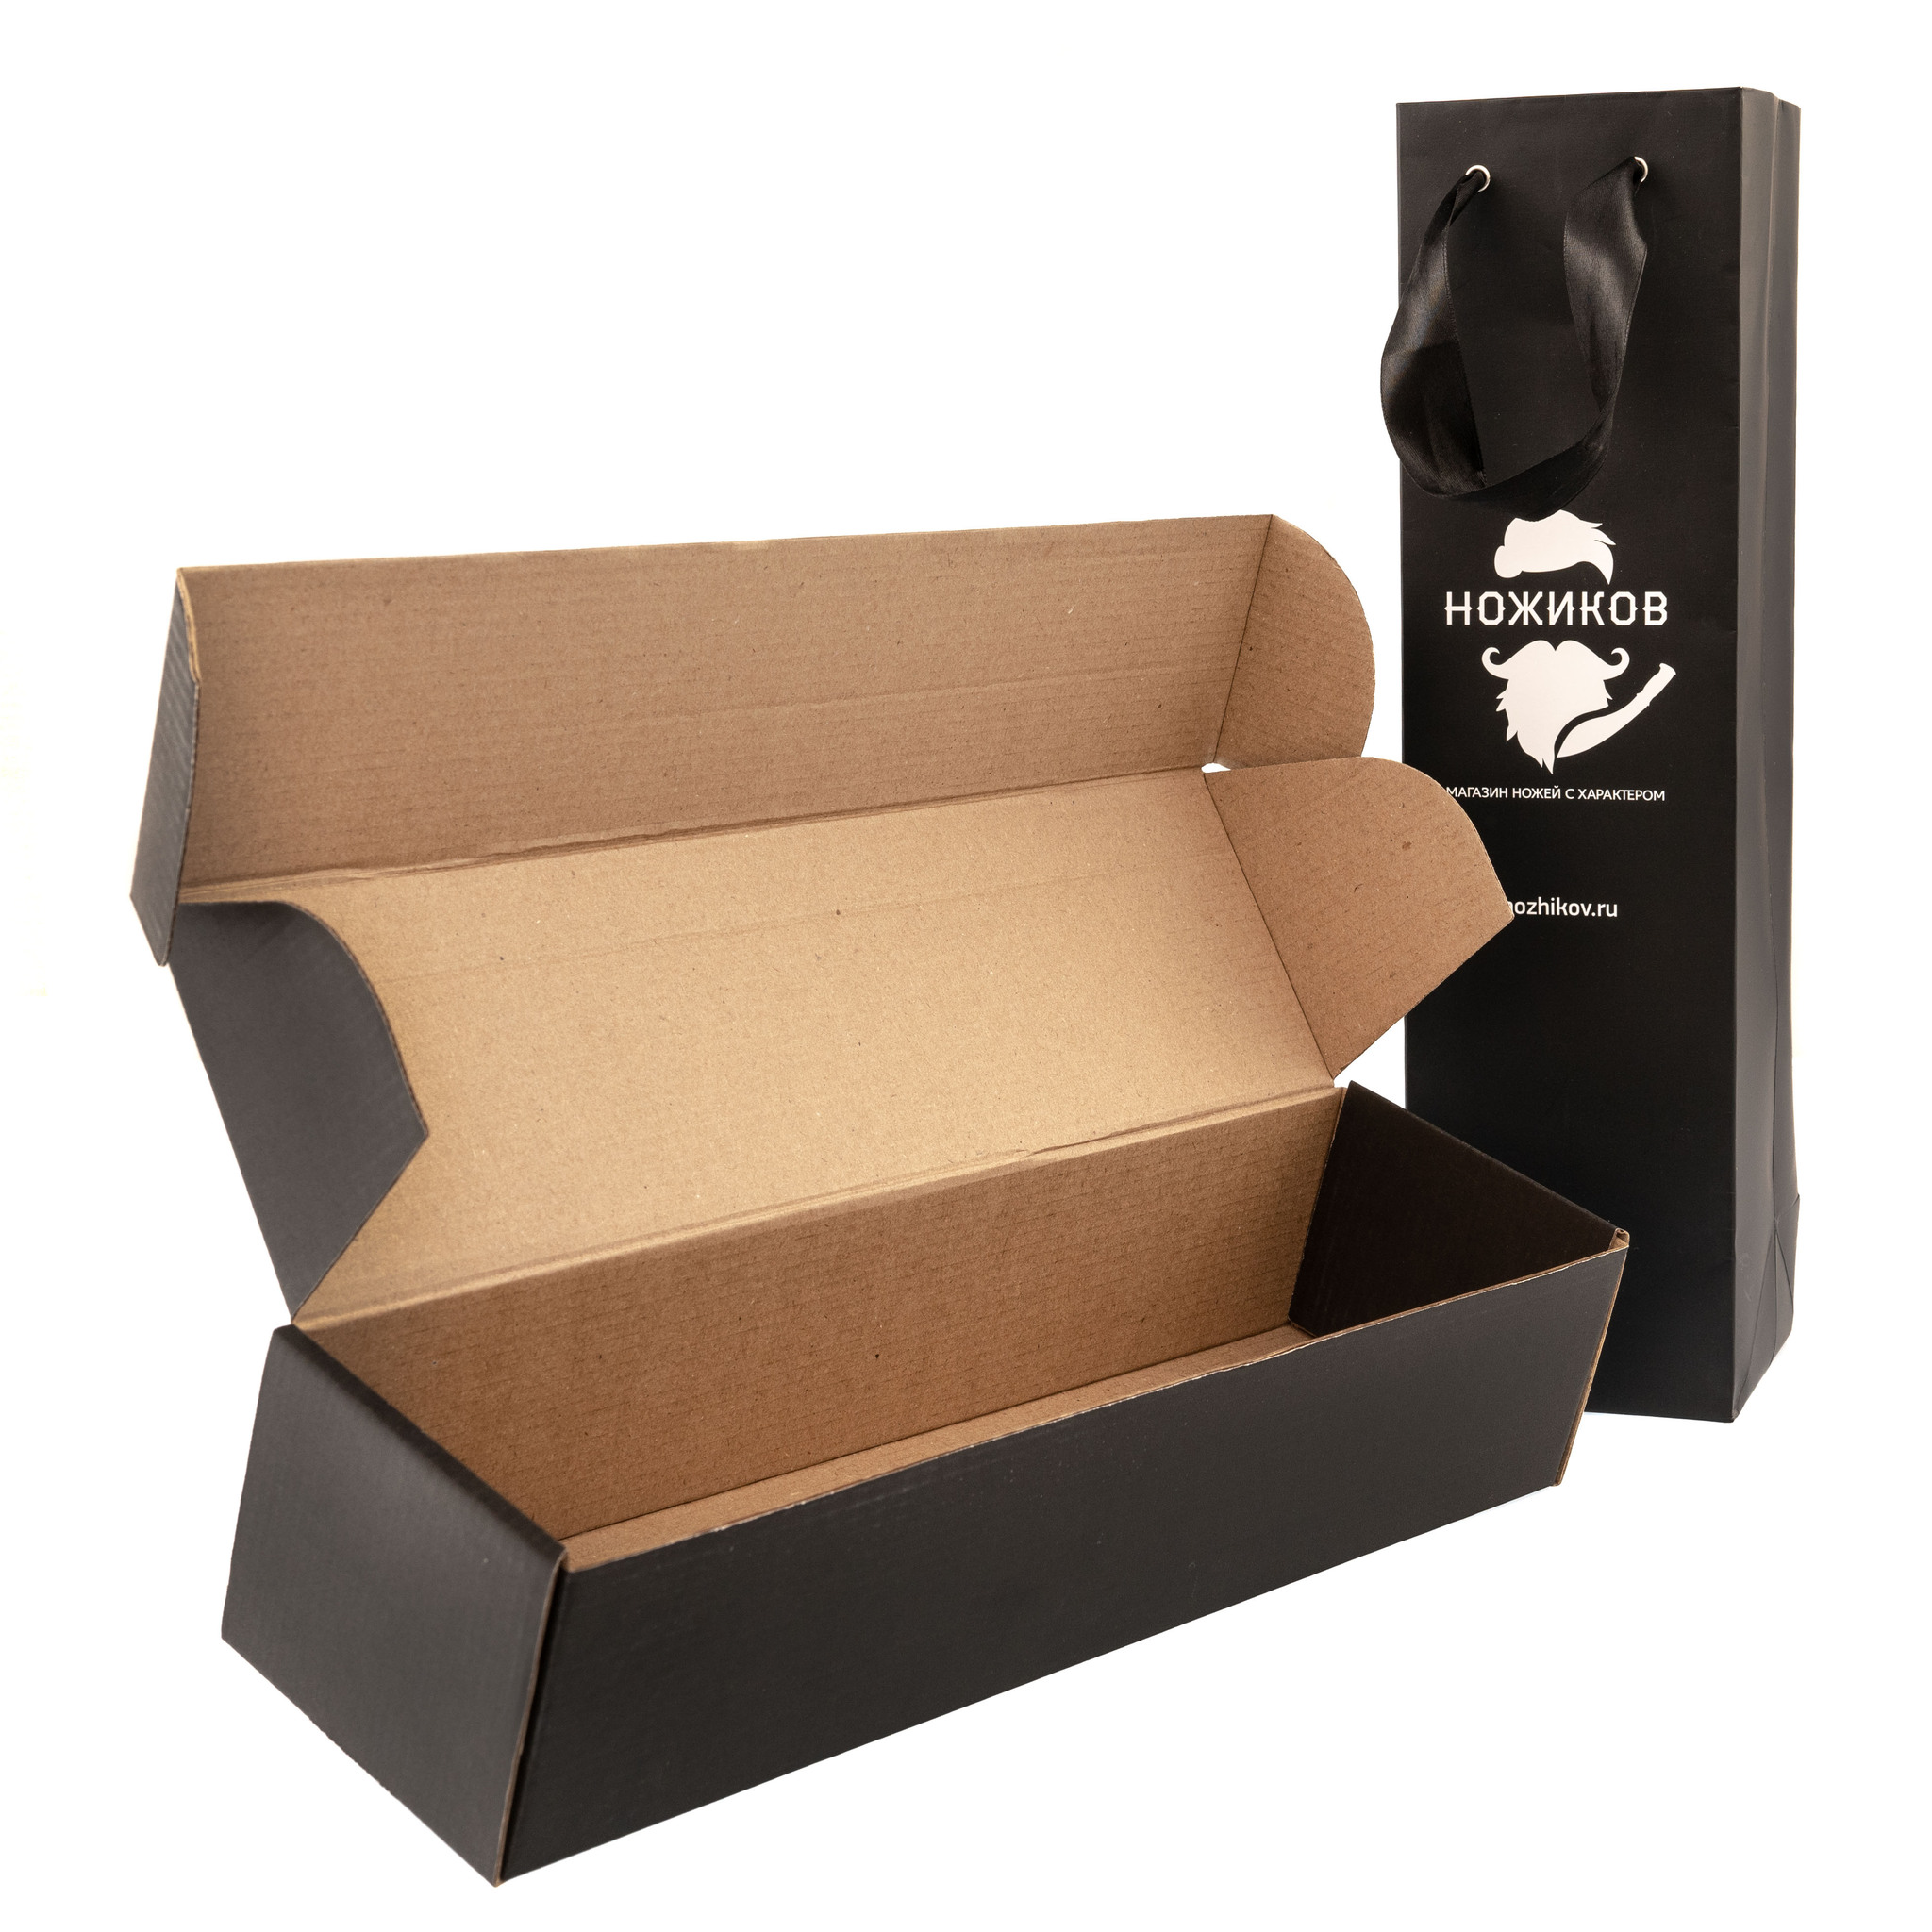 Подарочный набор: пакет и коробка 